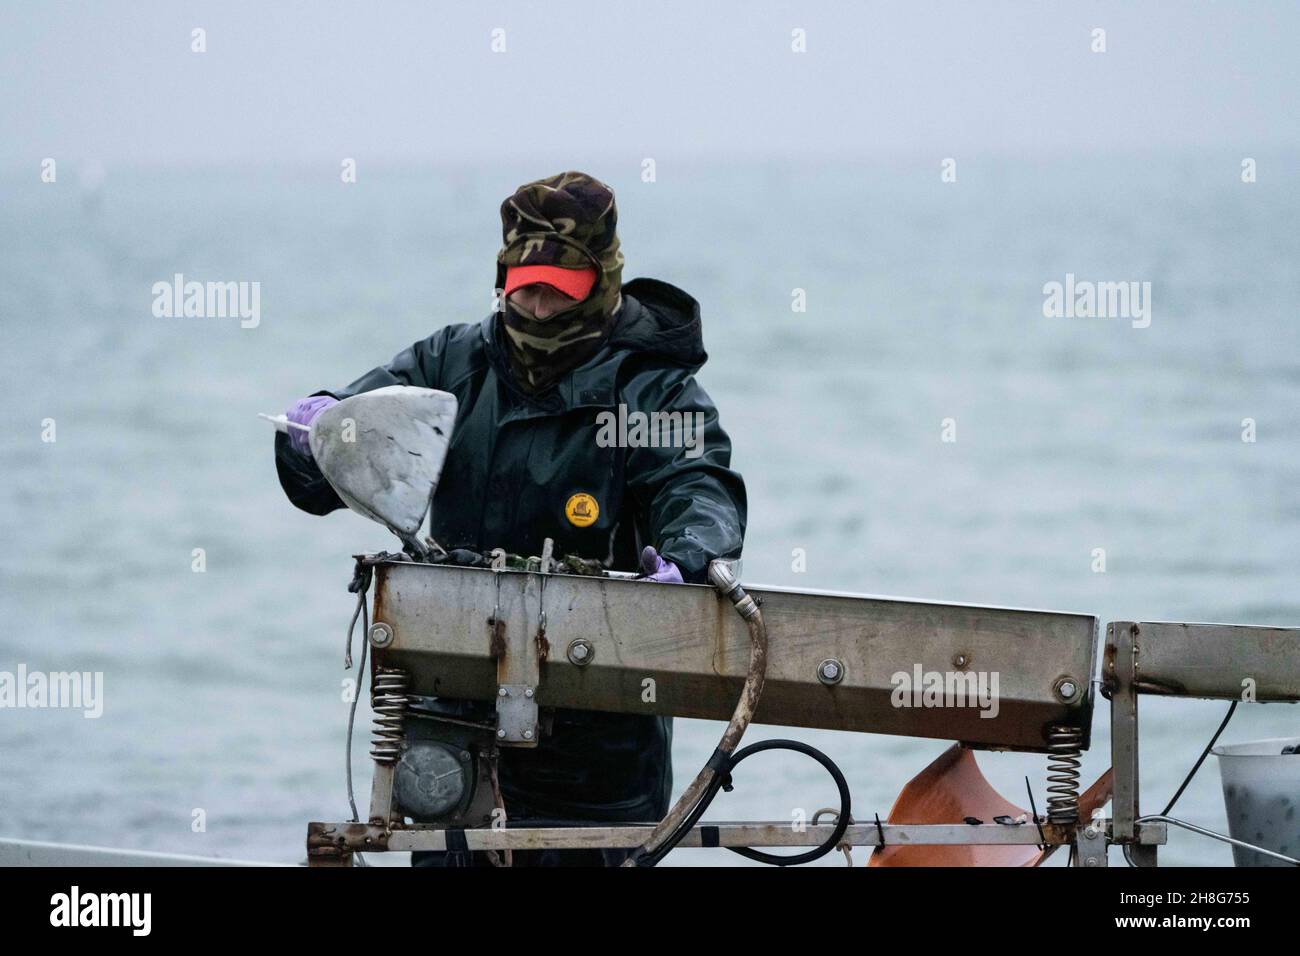 Delta del Po, Scardovari, Italy, November 26, 2021 - Fisherwomen and fishermen works in Sacca degli Scardovari Stock Photo